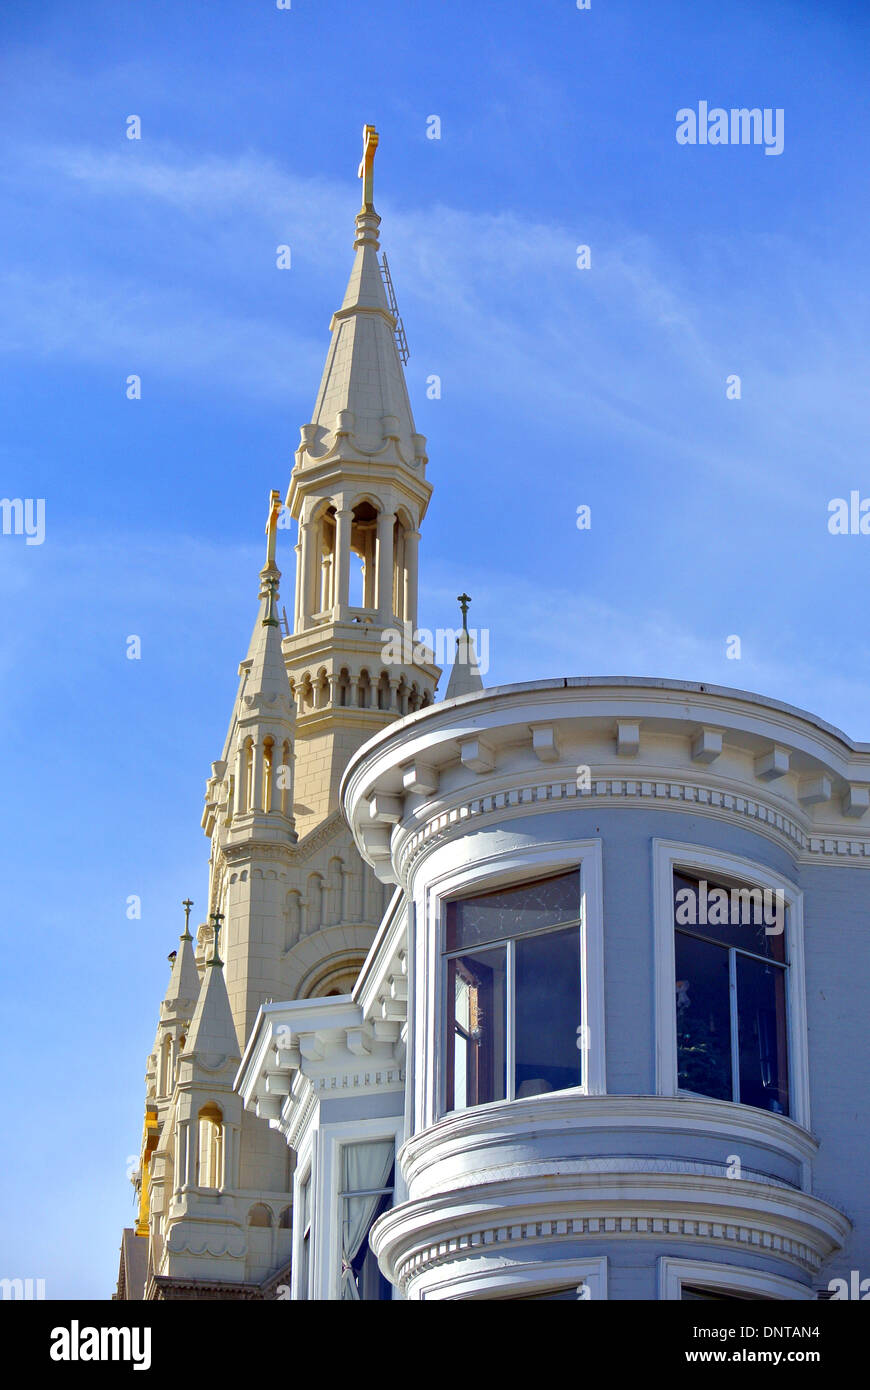 Vista dei santi Pietro e Paolo chiesa cattolica guglie e torretta in stile vittoriano Foto Stock